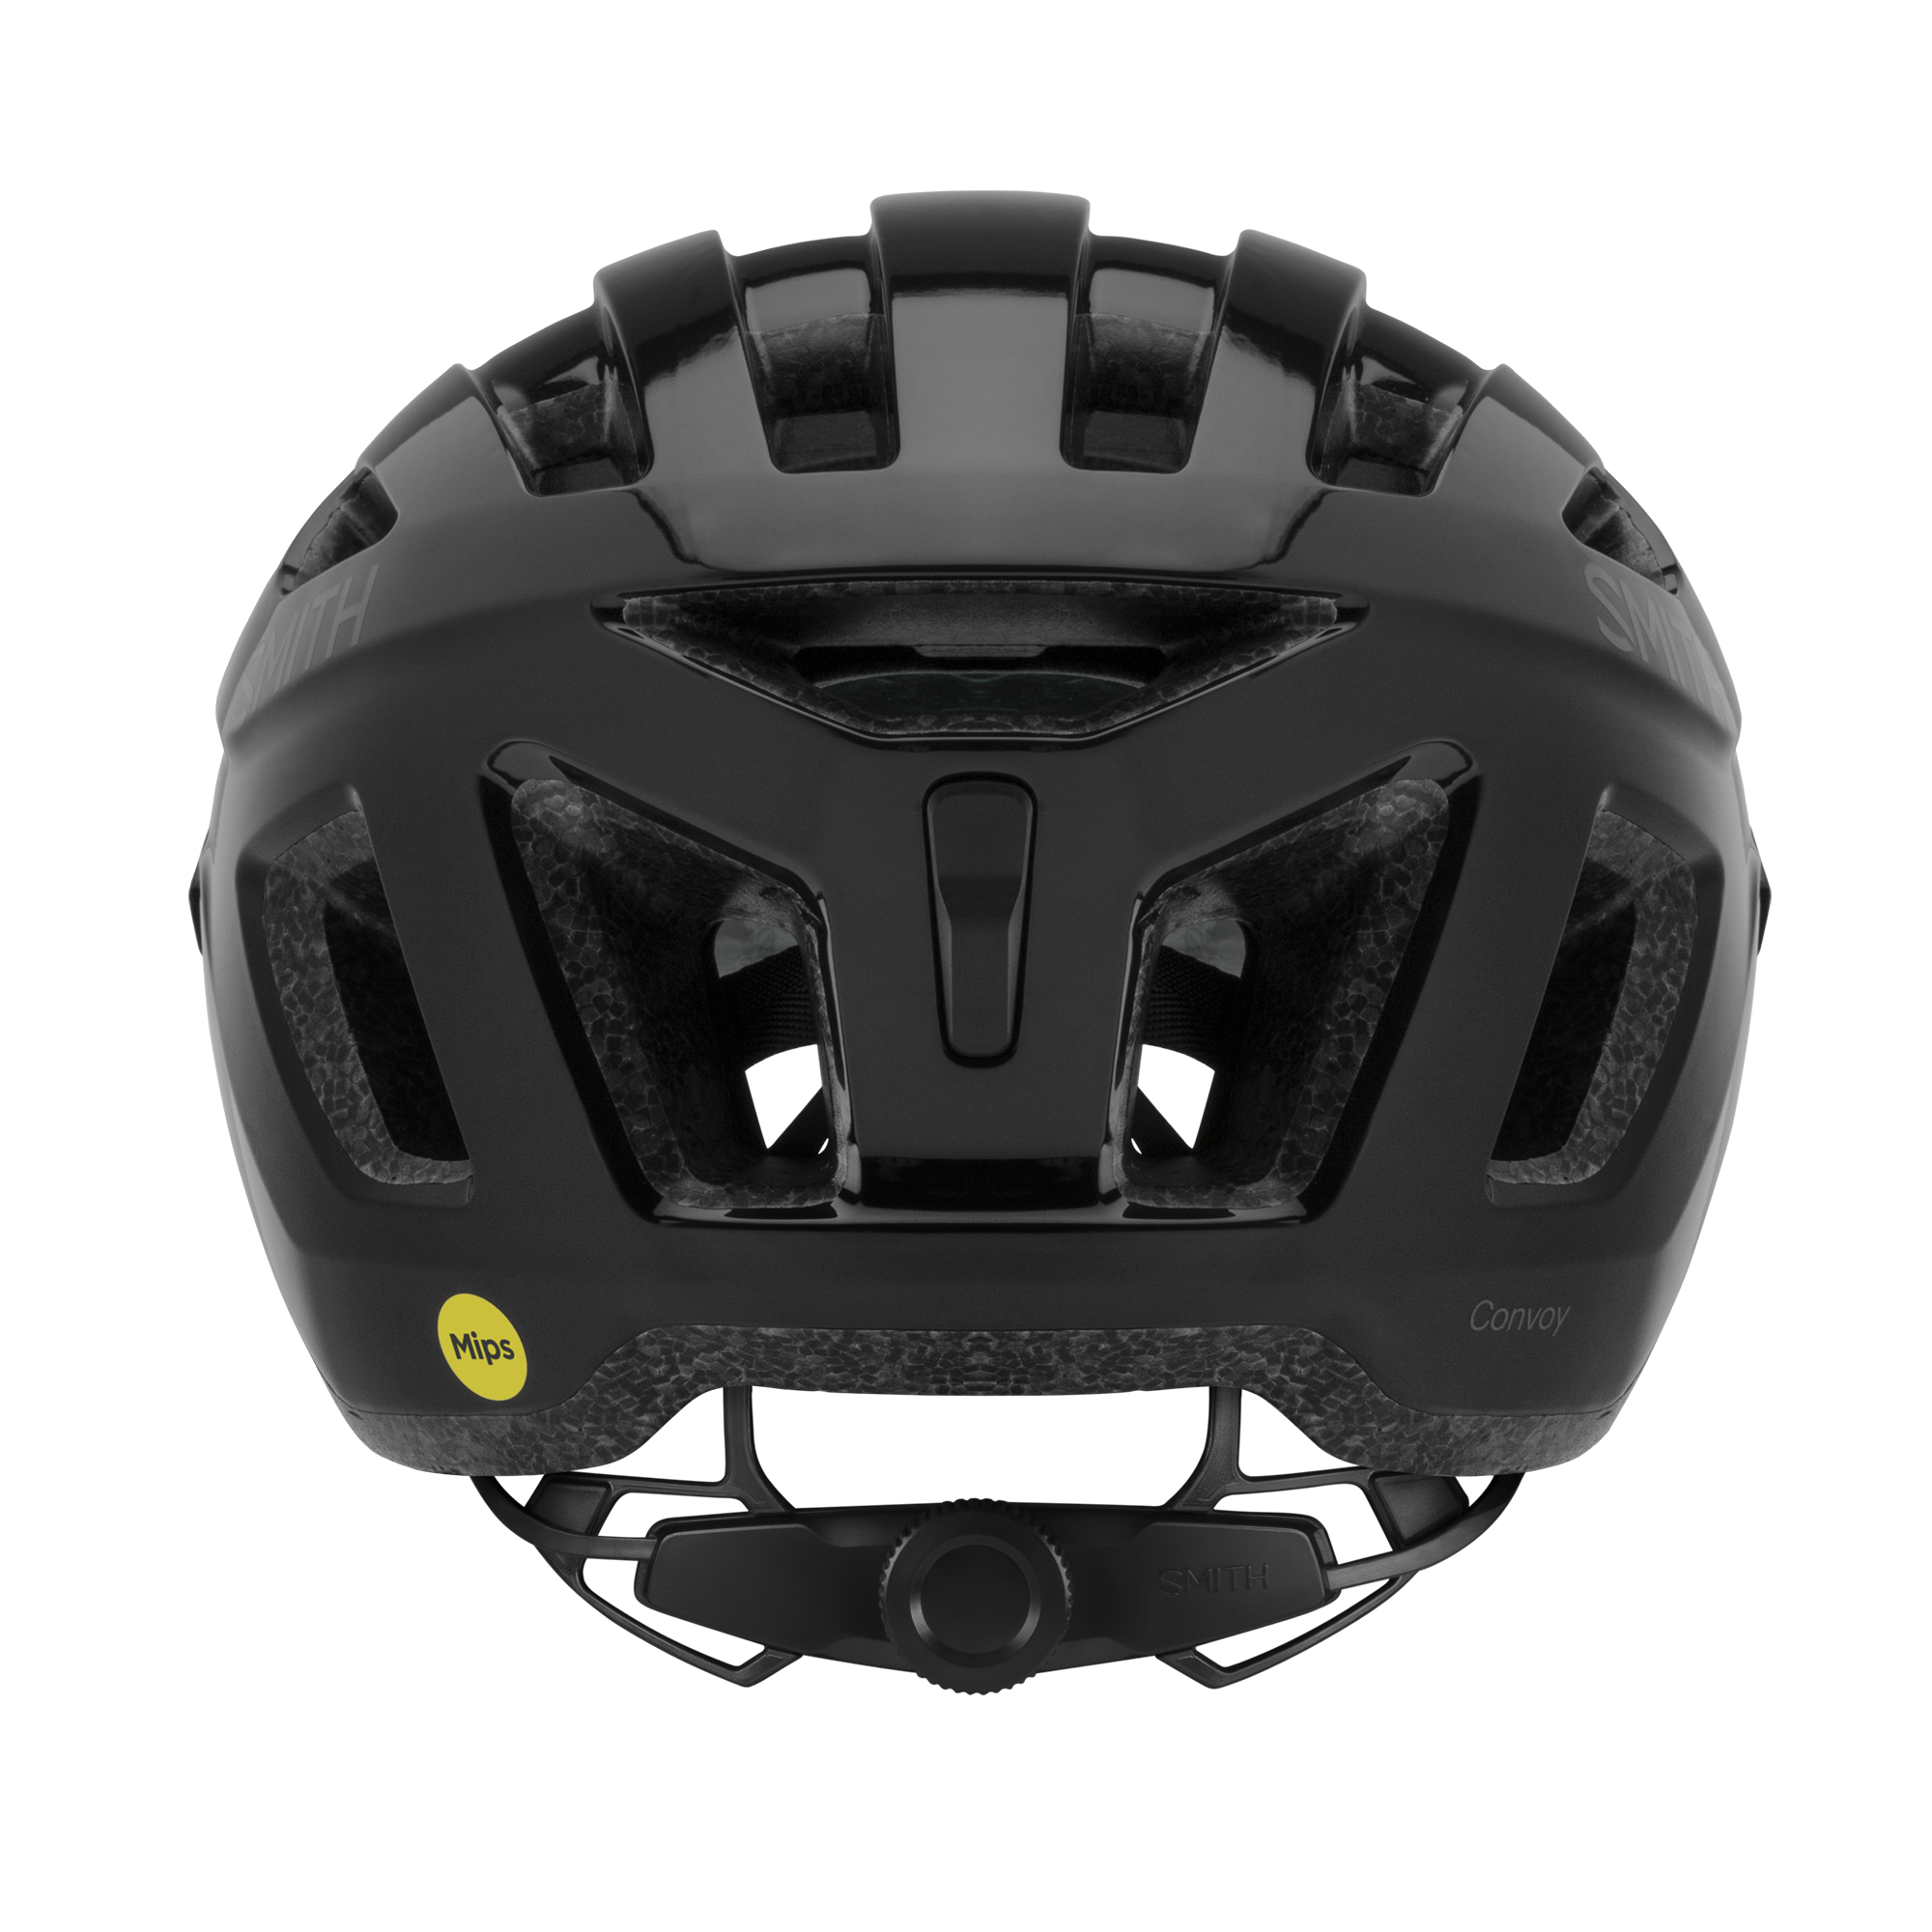 Smith Optics Helmet - Convoy Mips - Black